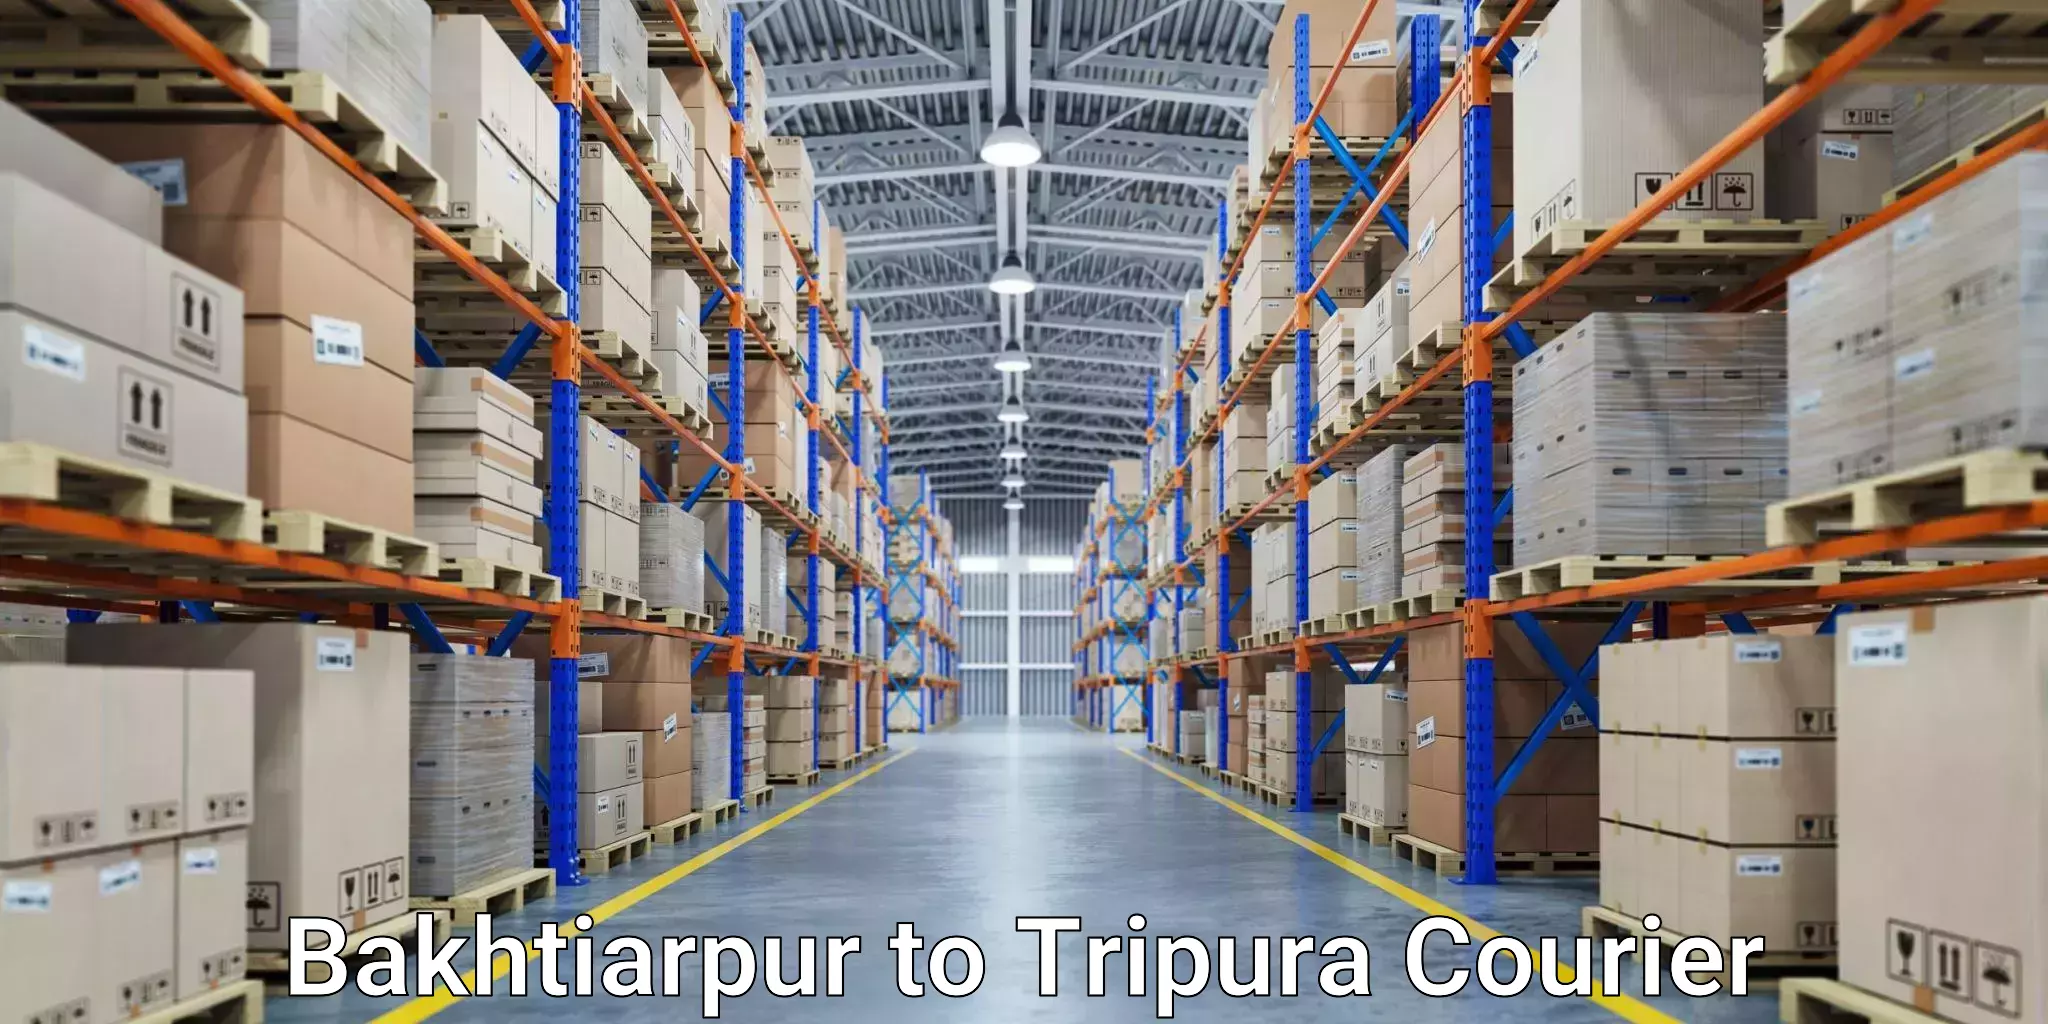 Easy return solutions Bakhtiarpur to Tripura